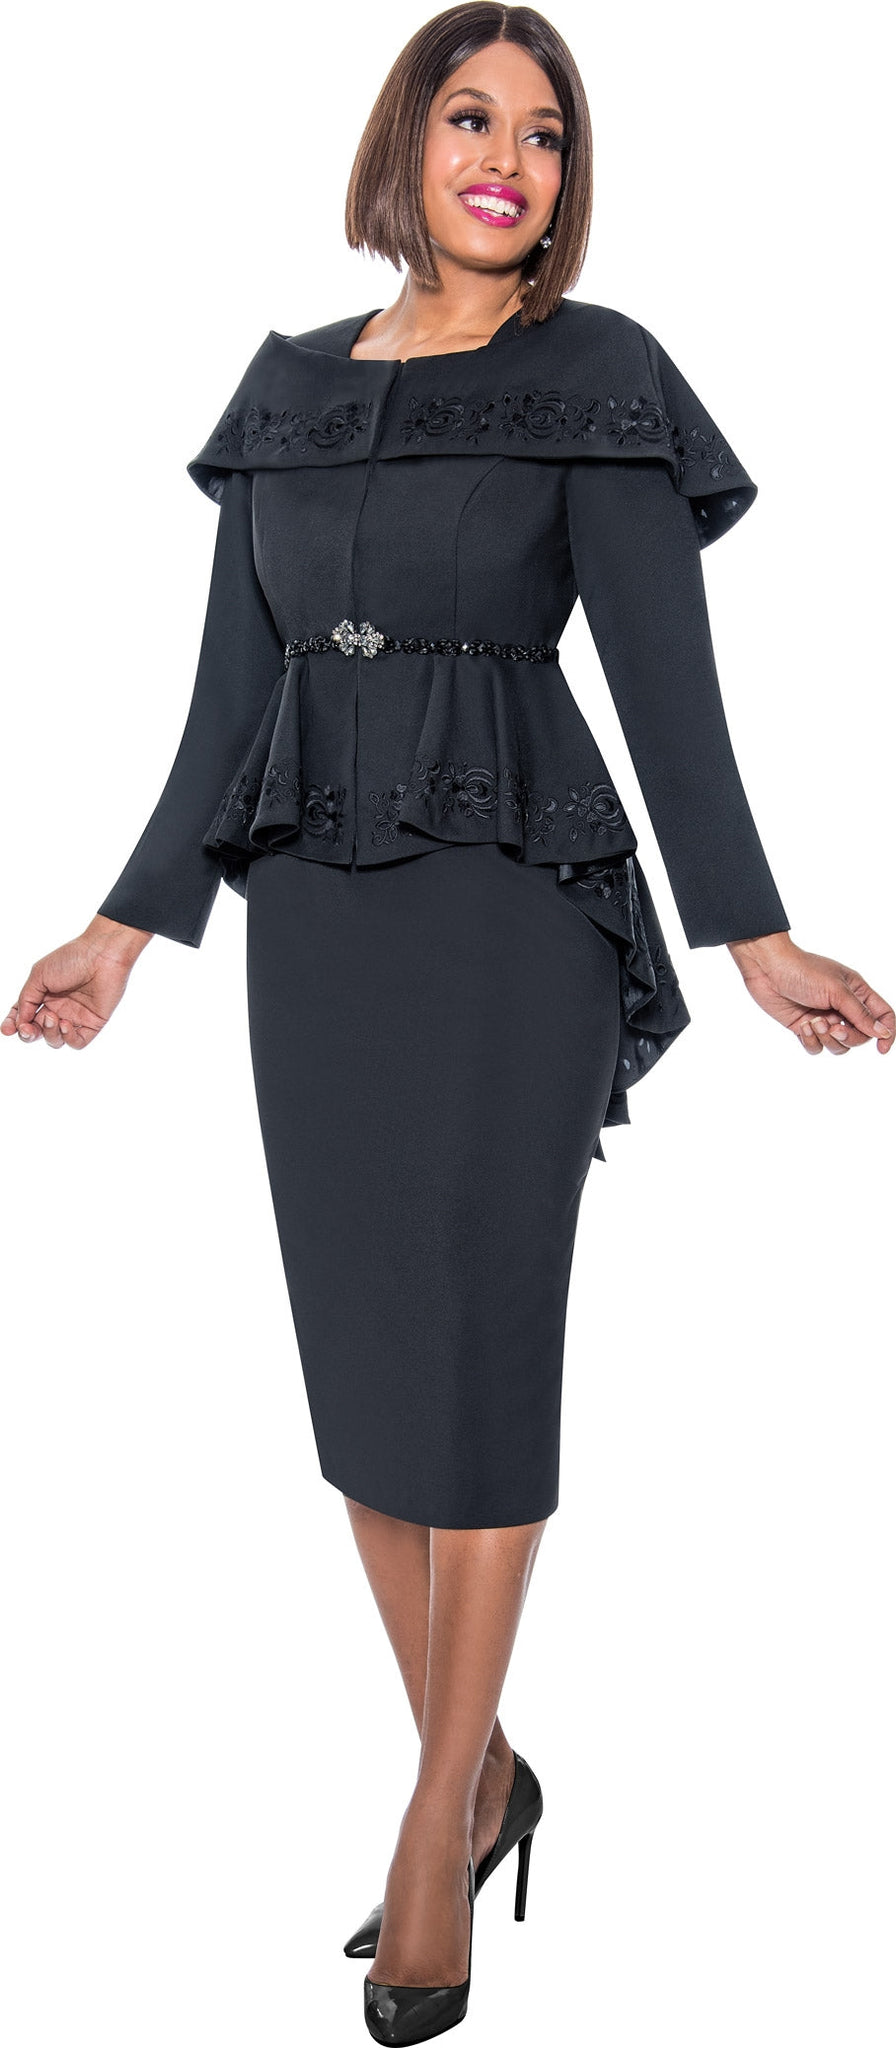 Divine Queen Skirt Suit 2162C-Black - Church Suits For Less